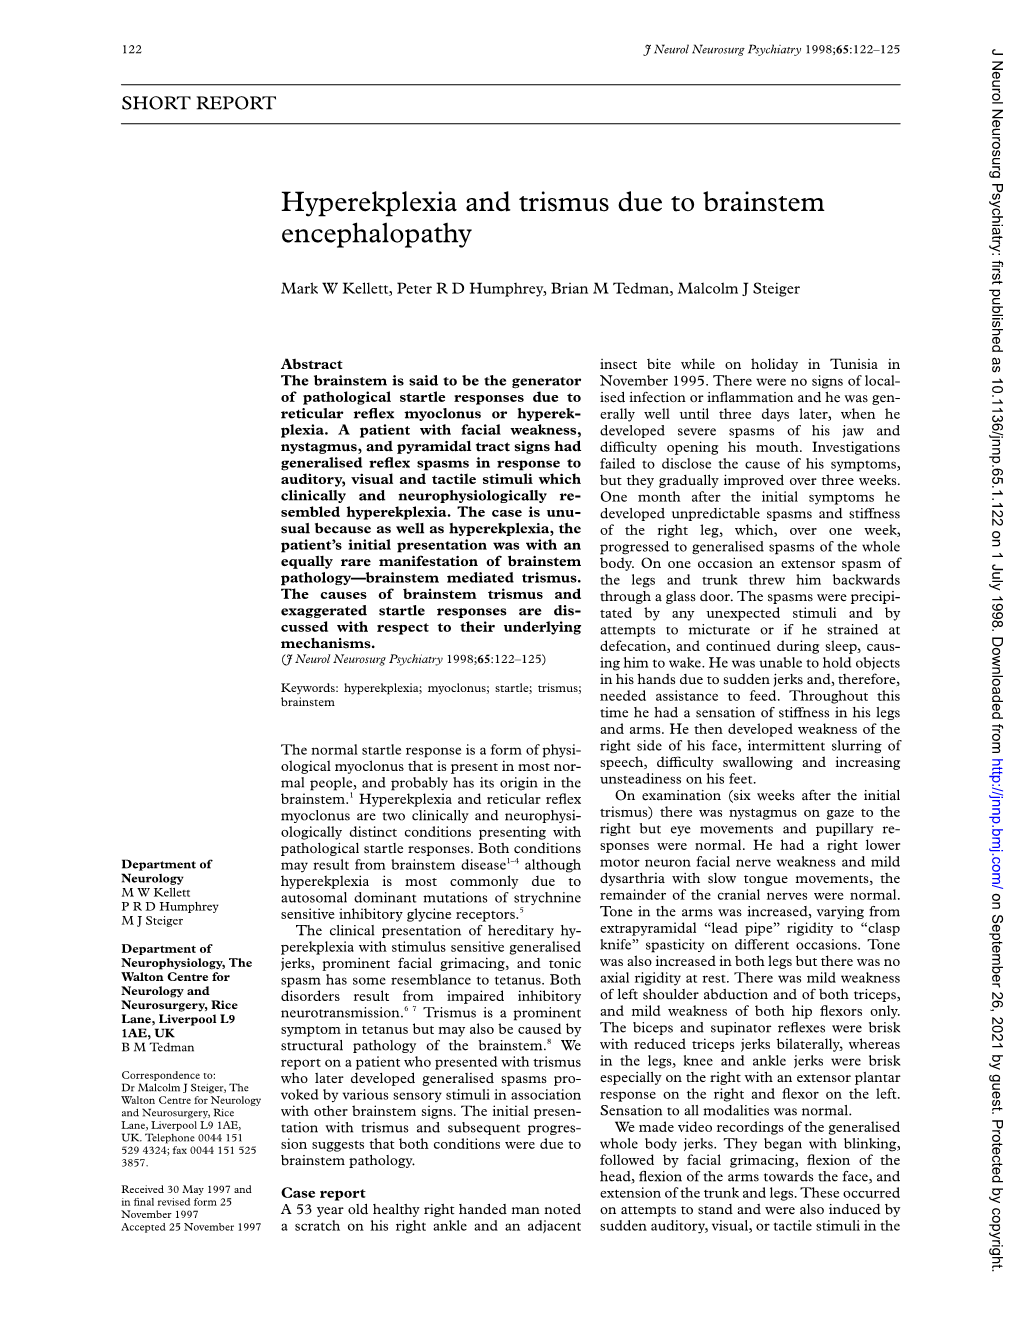 Hyperekplexia and Trismus Due to Brainstem Encephalopathy